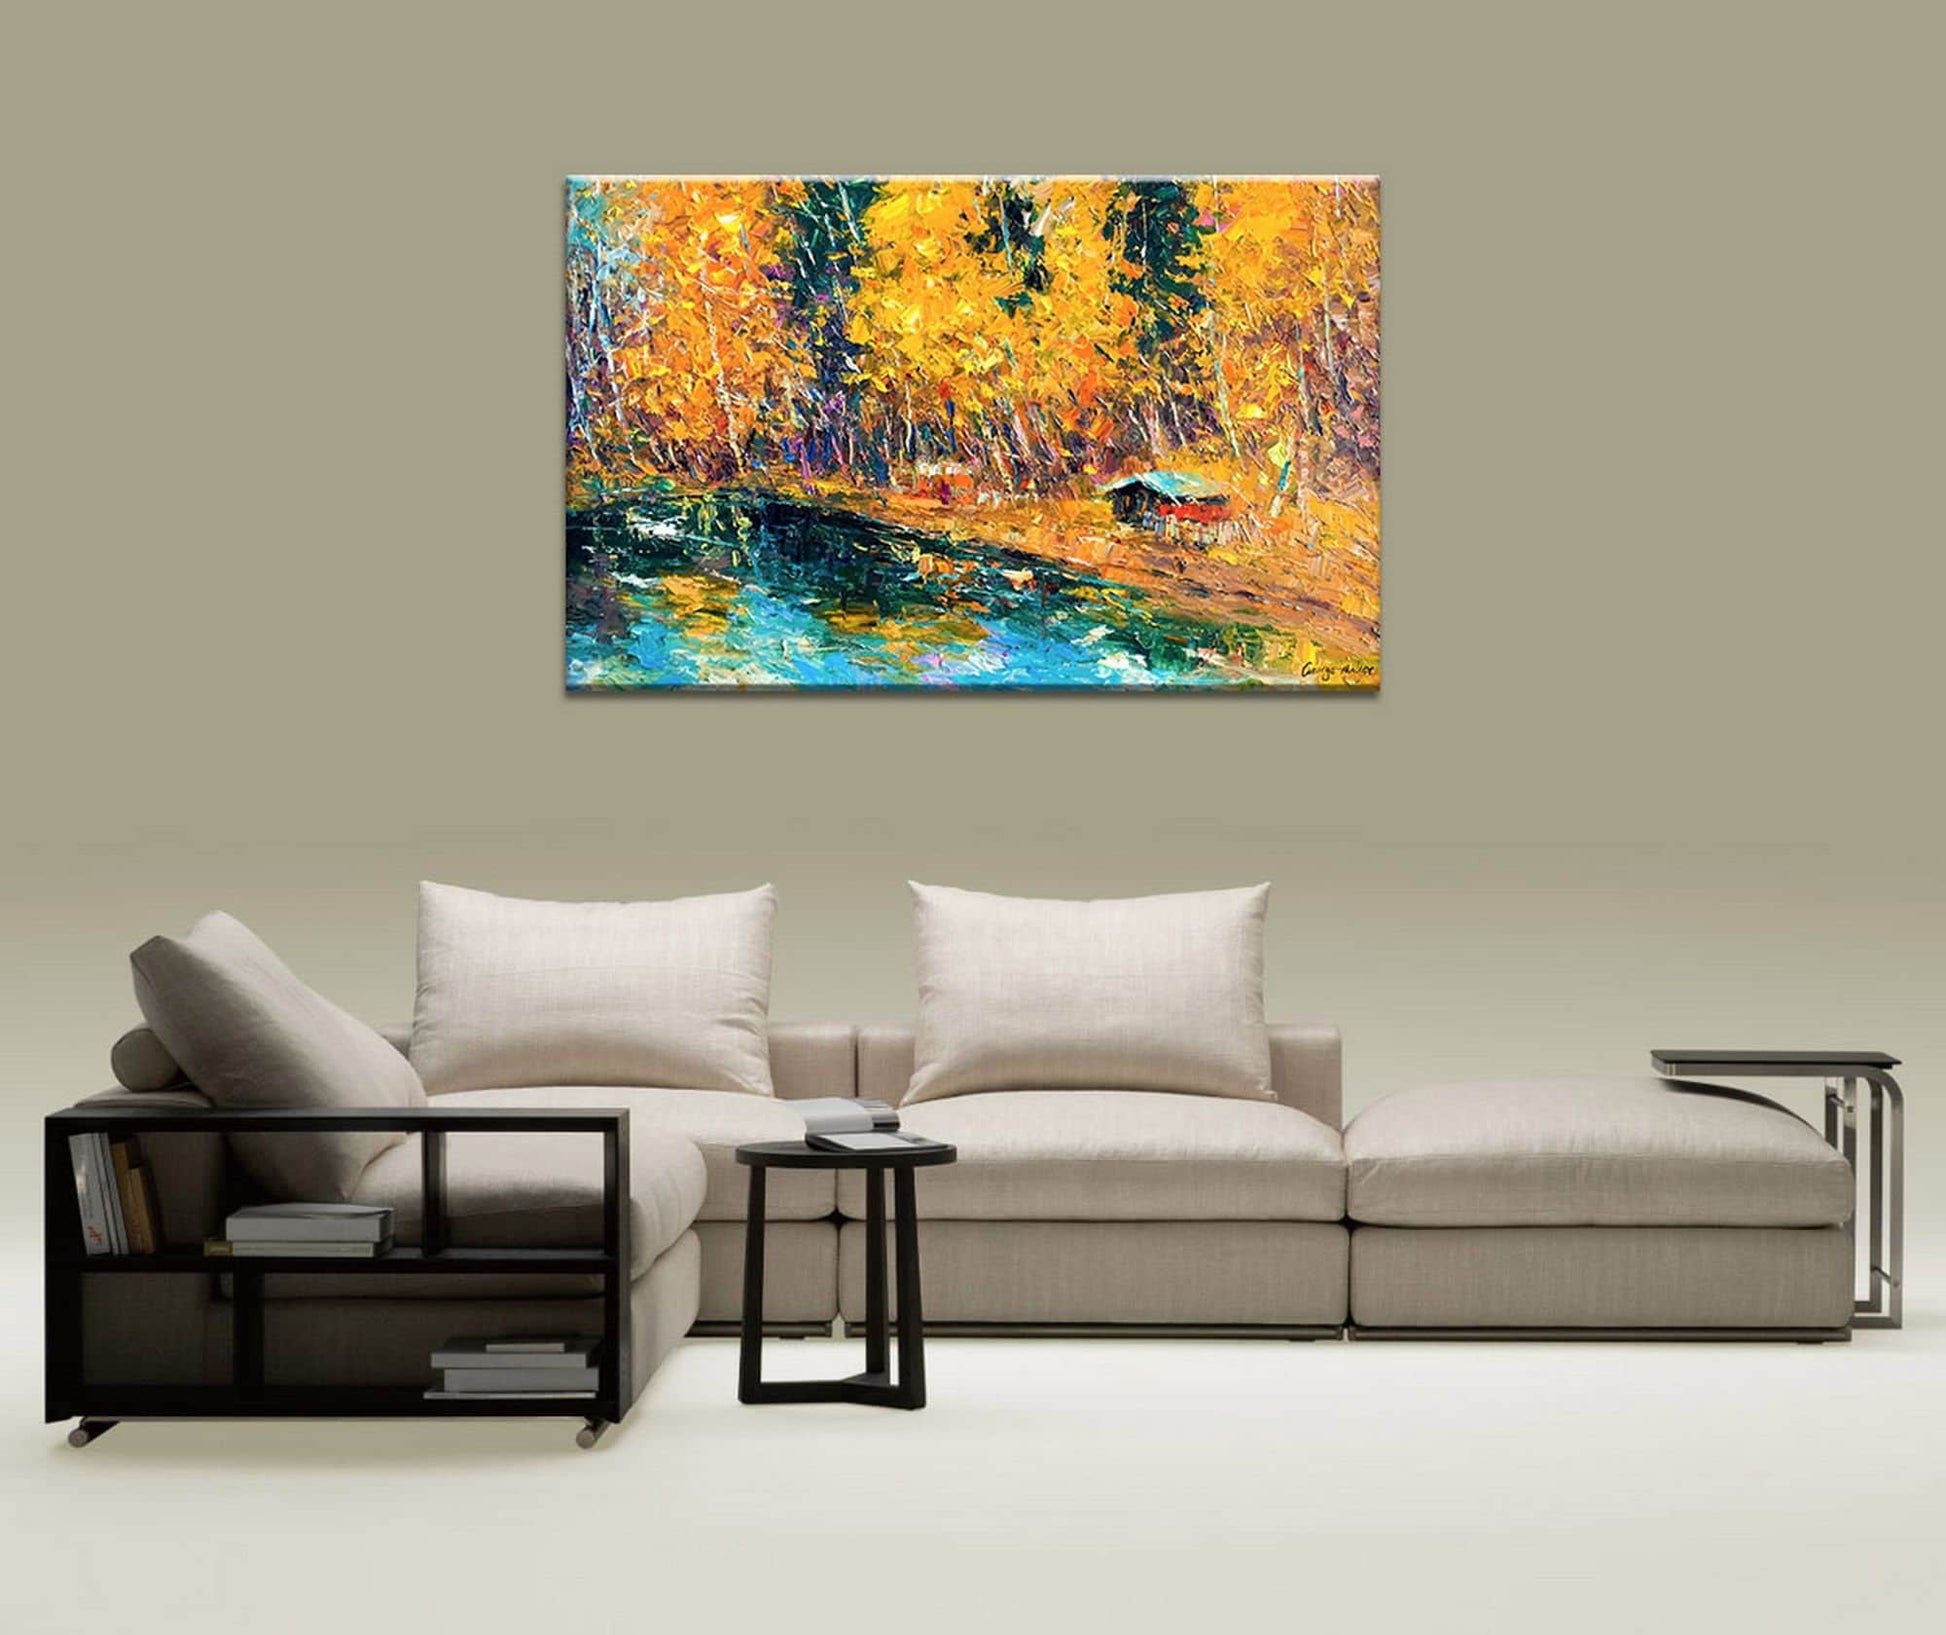 Landscape Oil Painting Autumn Forest, Canvas Art, Canvas Wall Decor, Large Landscape Painting, Contemporary Art, Original Painting Large Art